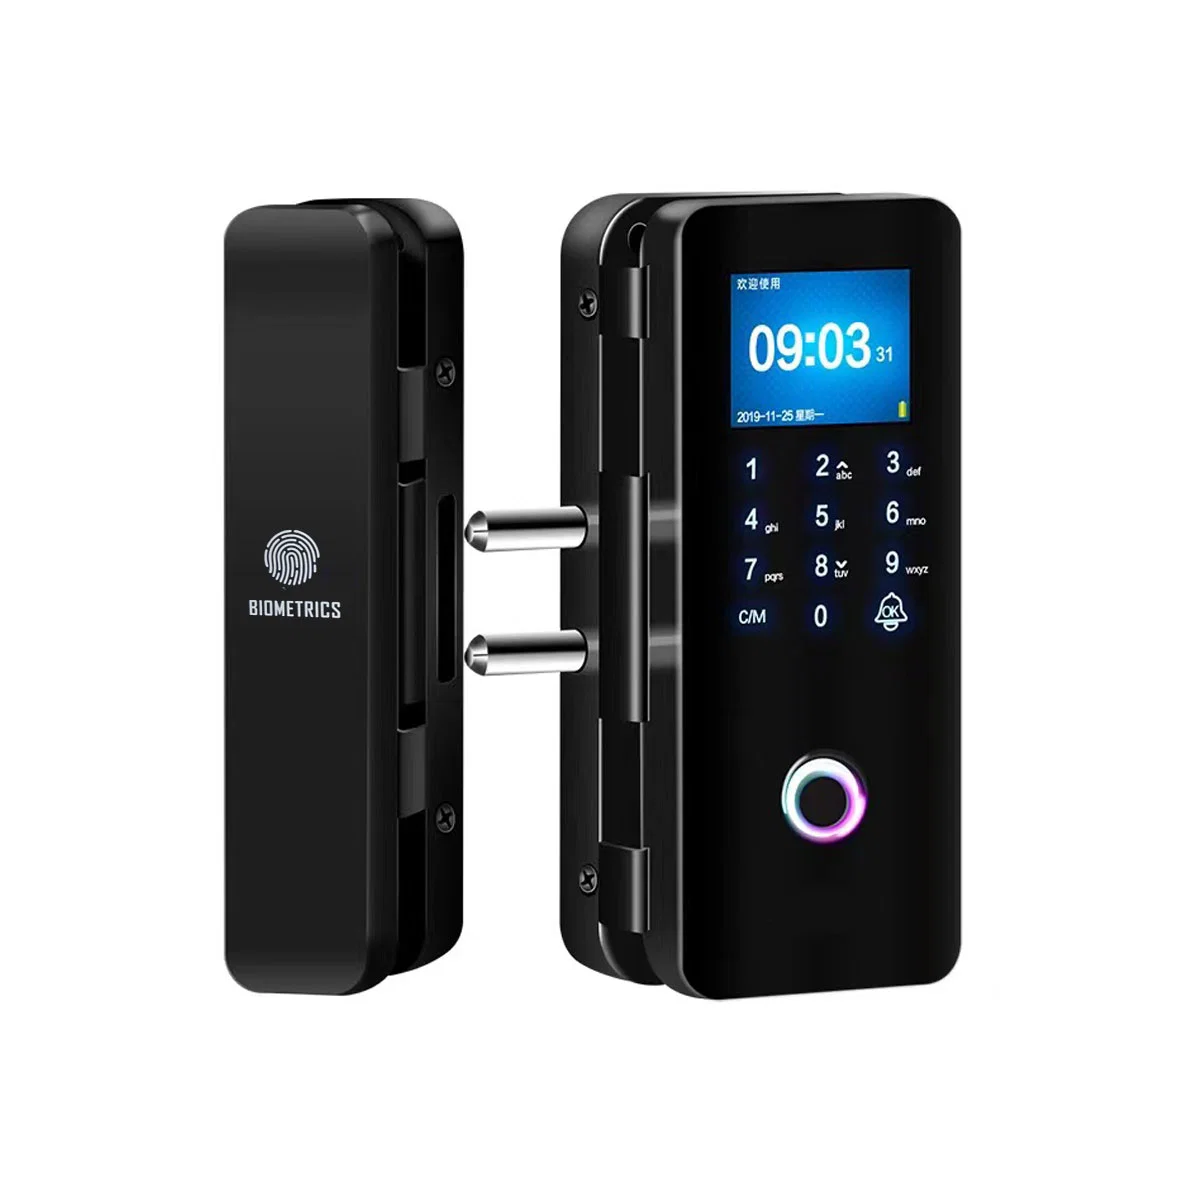 Neu Entwickelt Mobile Control Security Access Control Fingerabdruck-Passwort Smart Card Hotel Lock für rahmenlose Einzel- oder Doppelverglasung